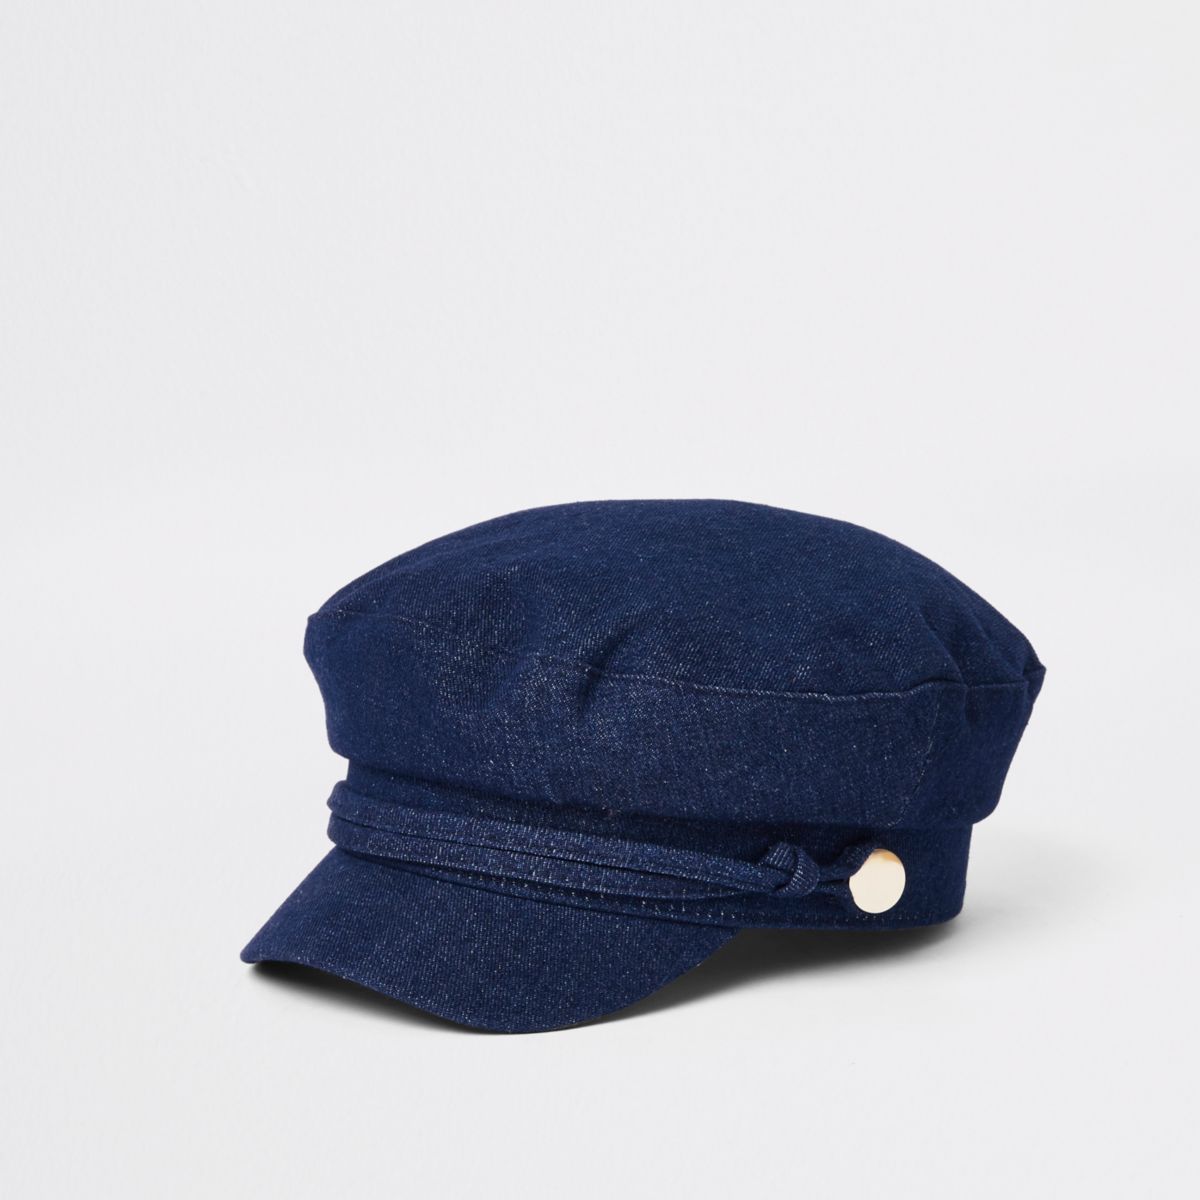 Dark blue denim baker boy hat - Hats - Accessories - women